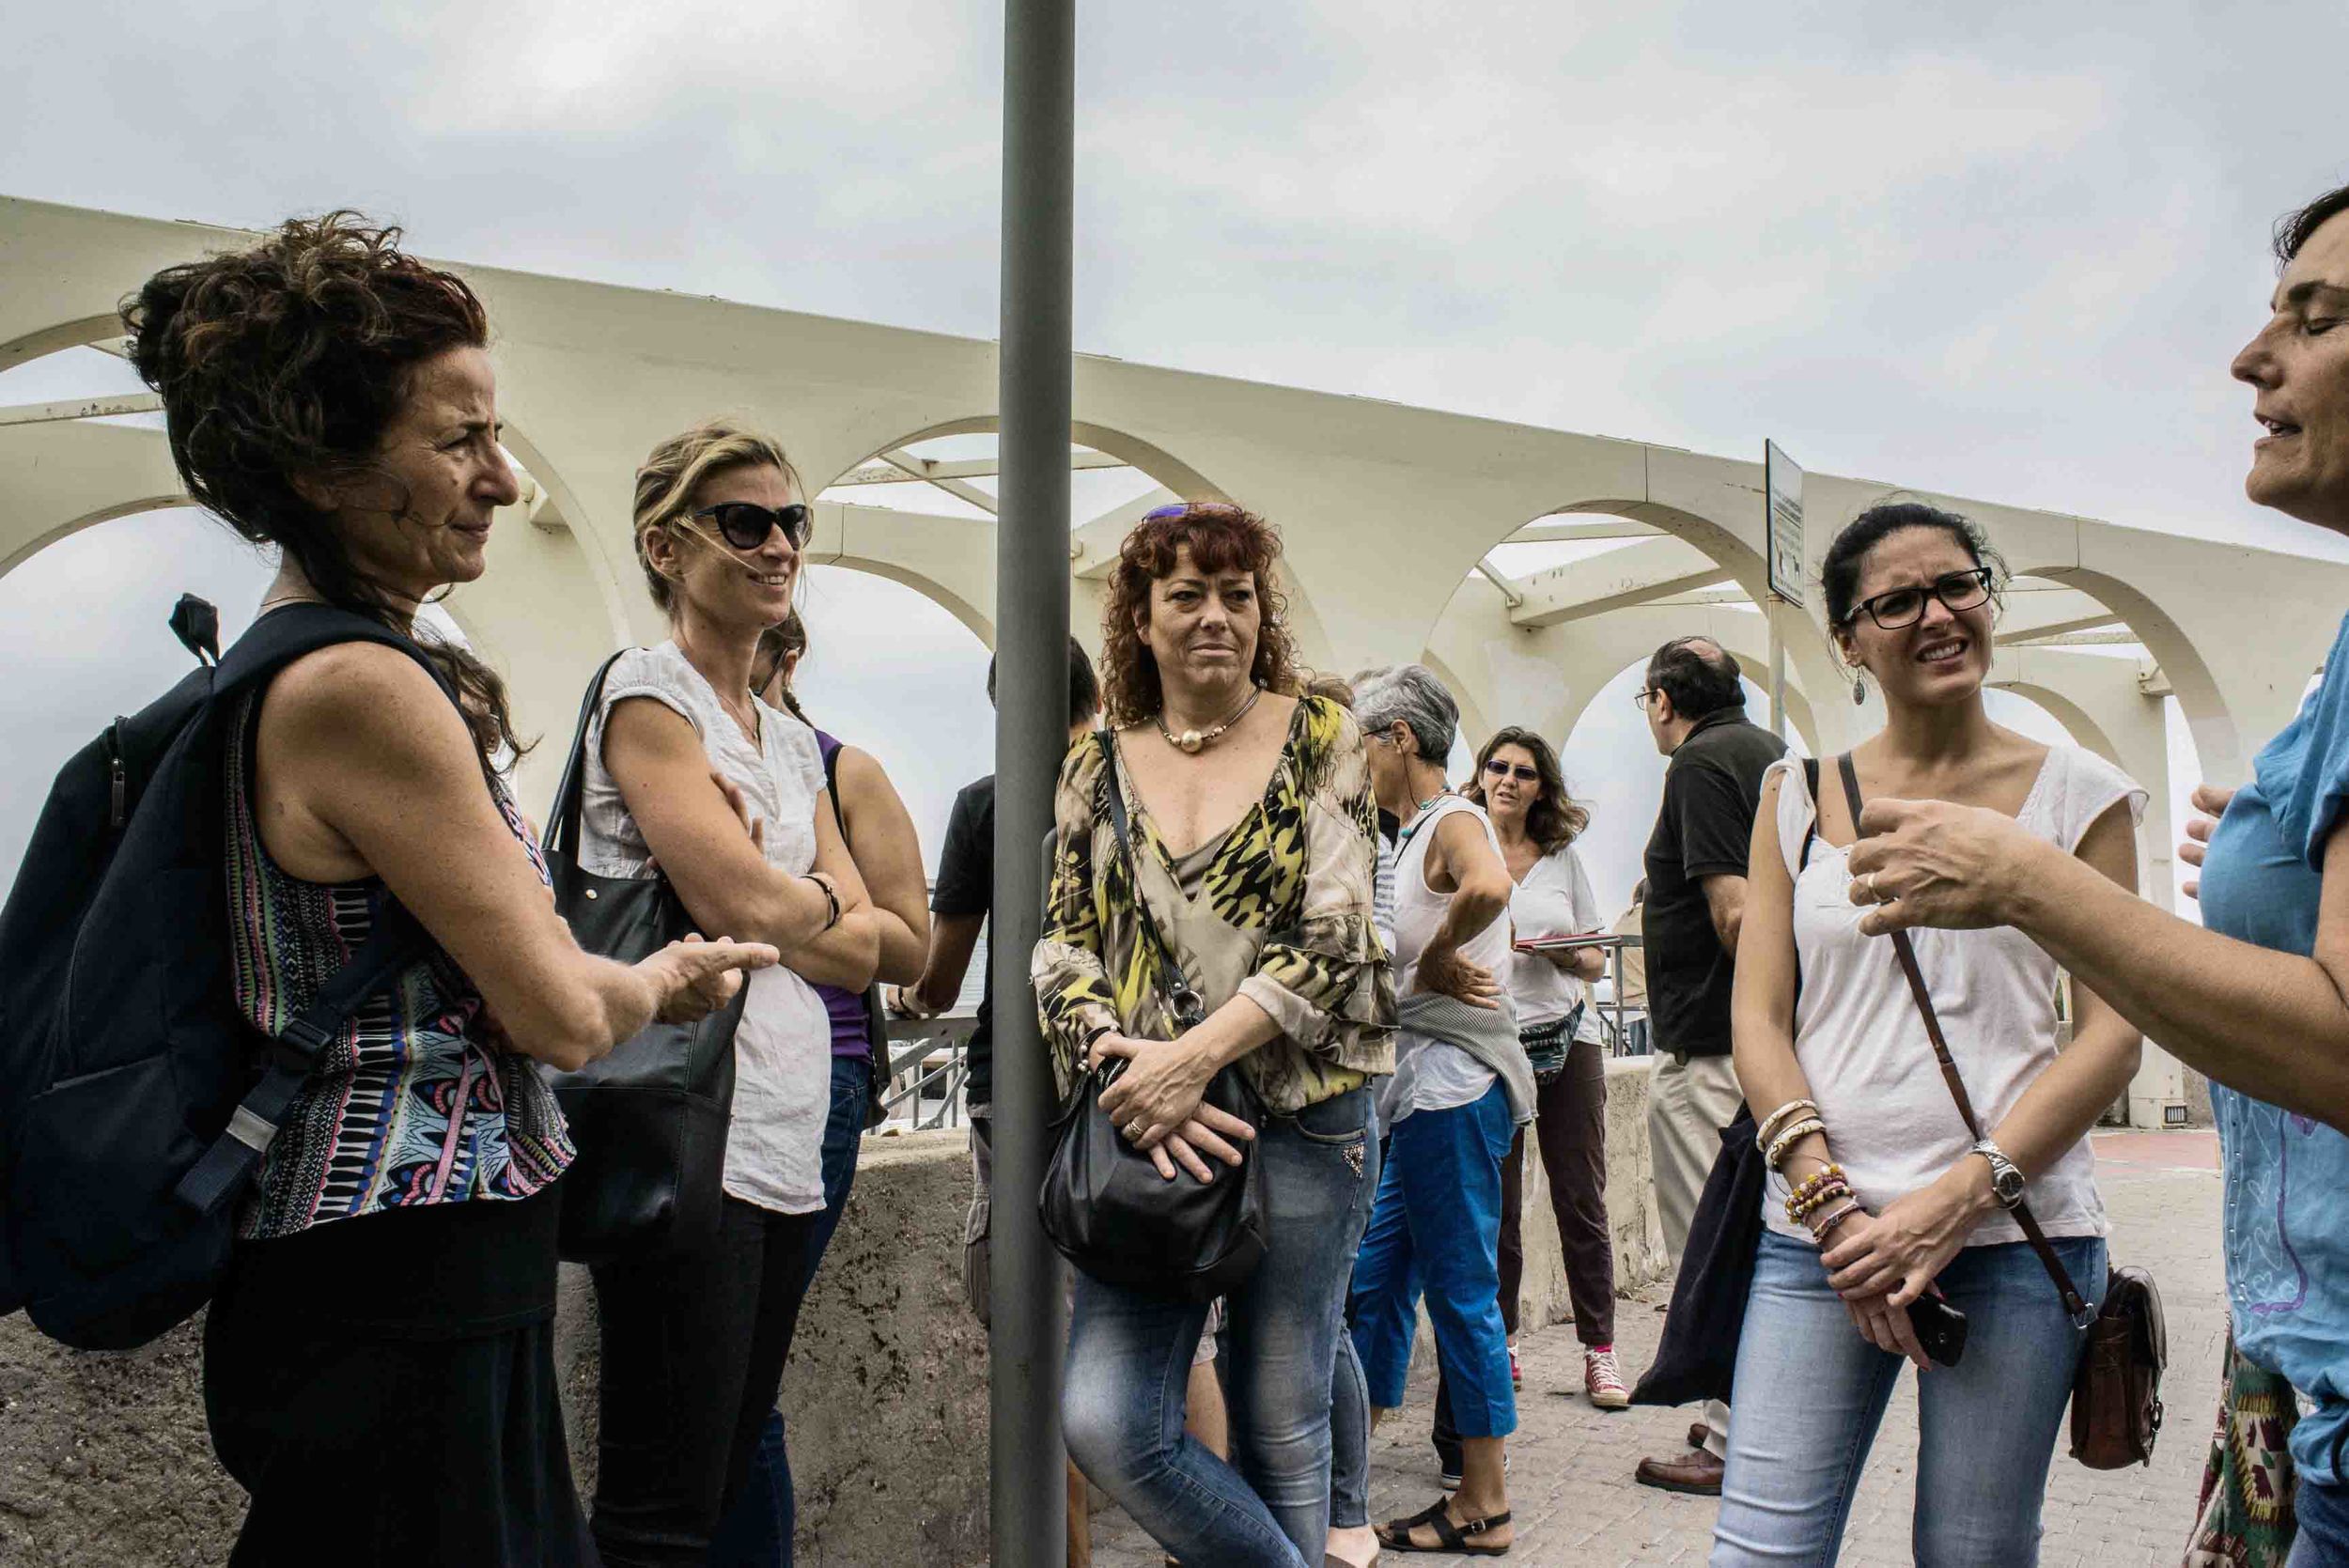  Attivisti del Gruppo di Epidemiologia Popolare&nbsp; durante un momento di riposo al Pirgo, il lungomare della città.&nbsp;Civitavecchia, settembre 2014. (David Pagliani Istivan) 